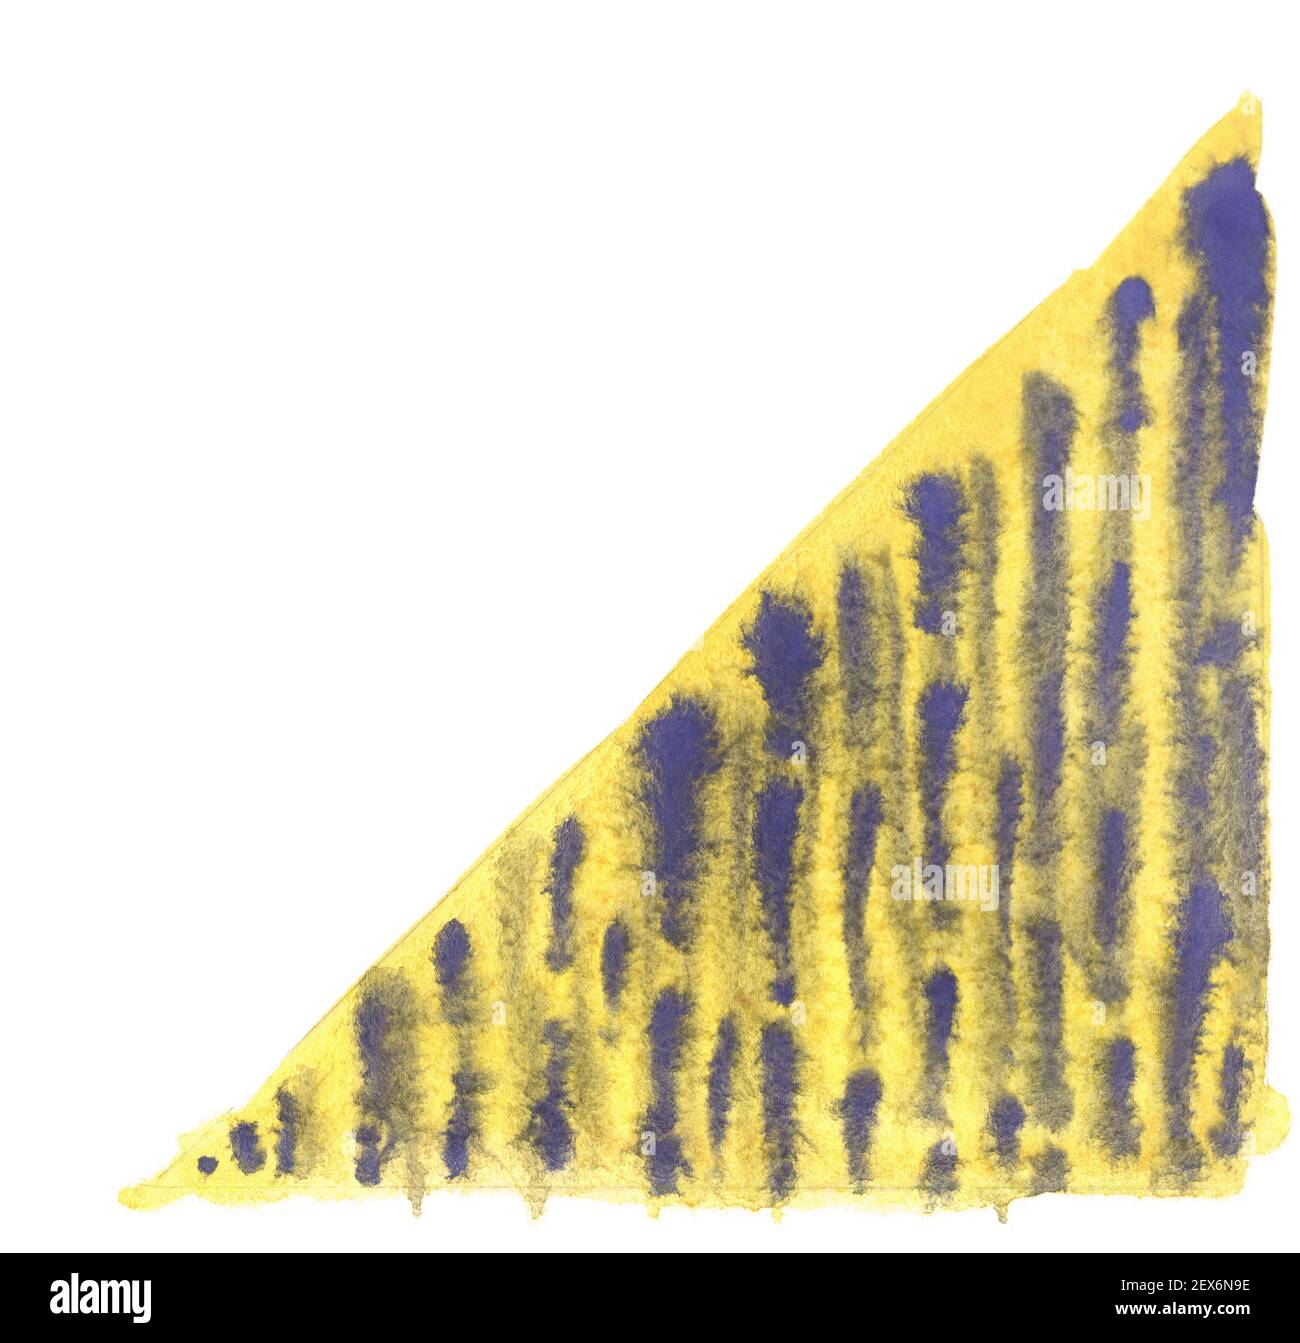 Handgemachte violette Aquarell lineare Spritzer auf gelbem Dreieck. Abstrakte Farbflecken. Aquarellhintergrund. Lebendiges handgemachtes Element für originelles Design Stockfoto